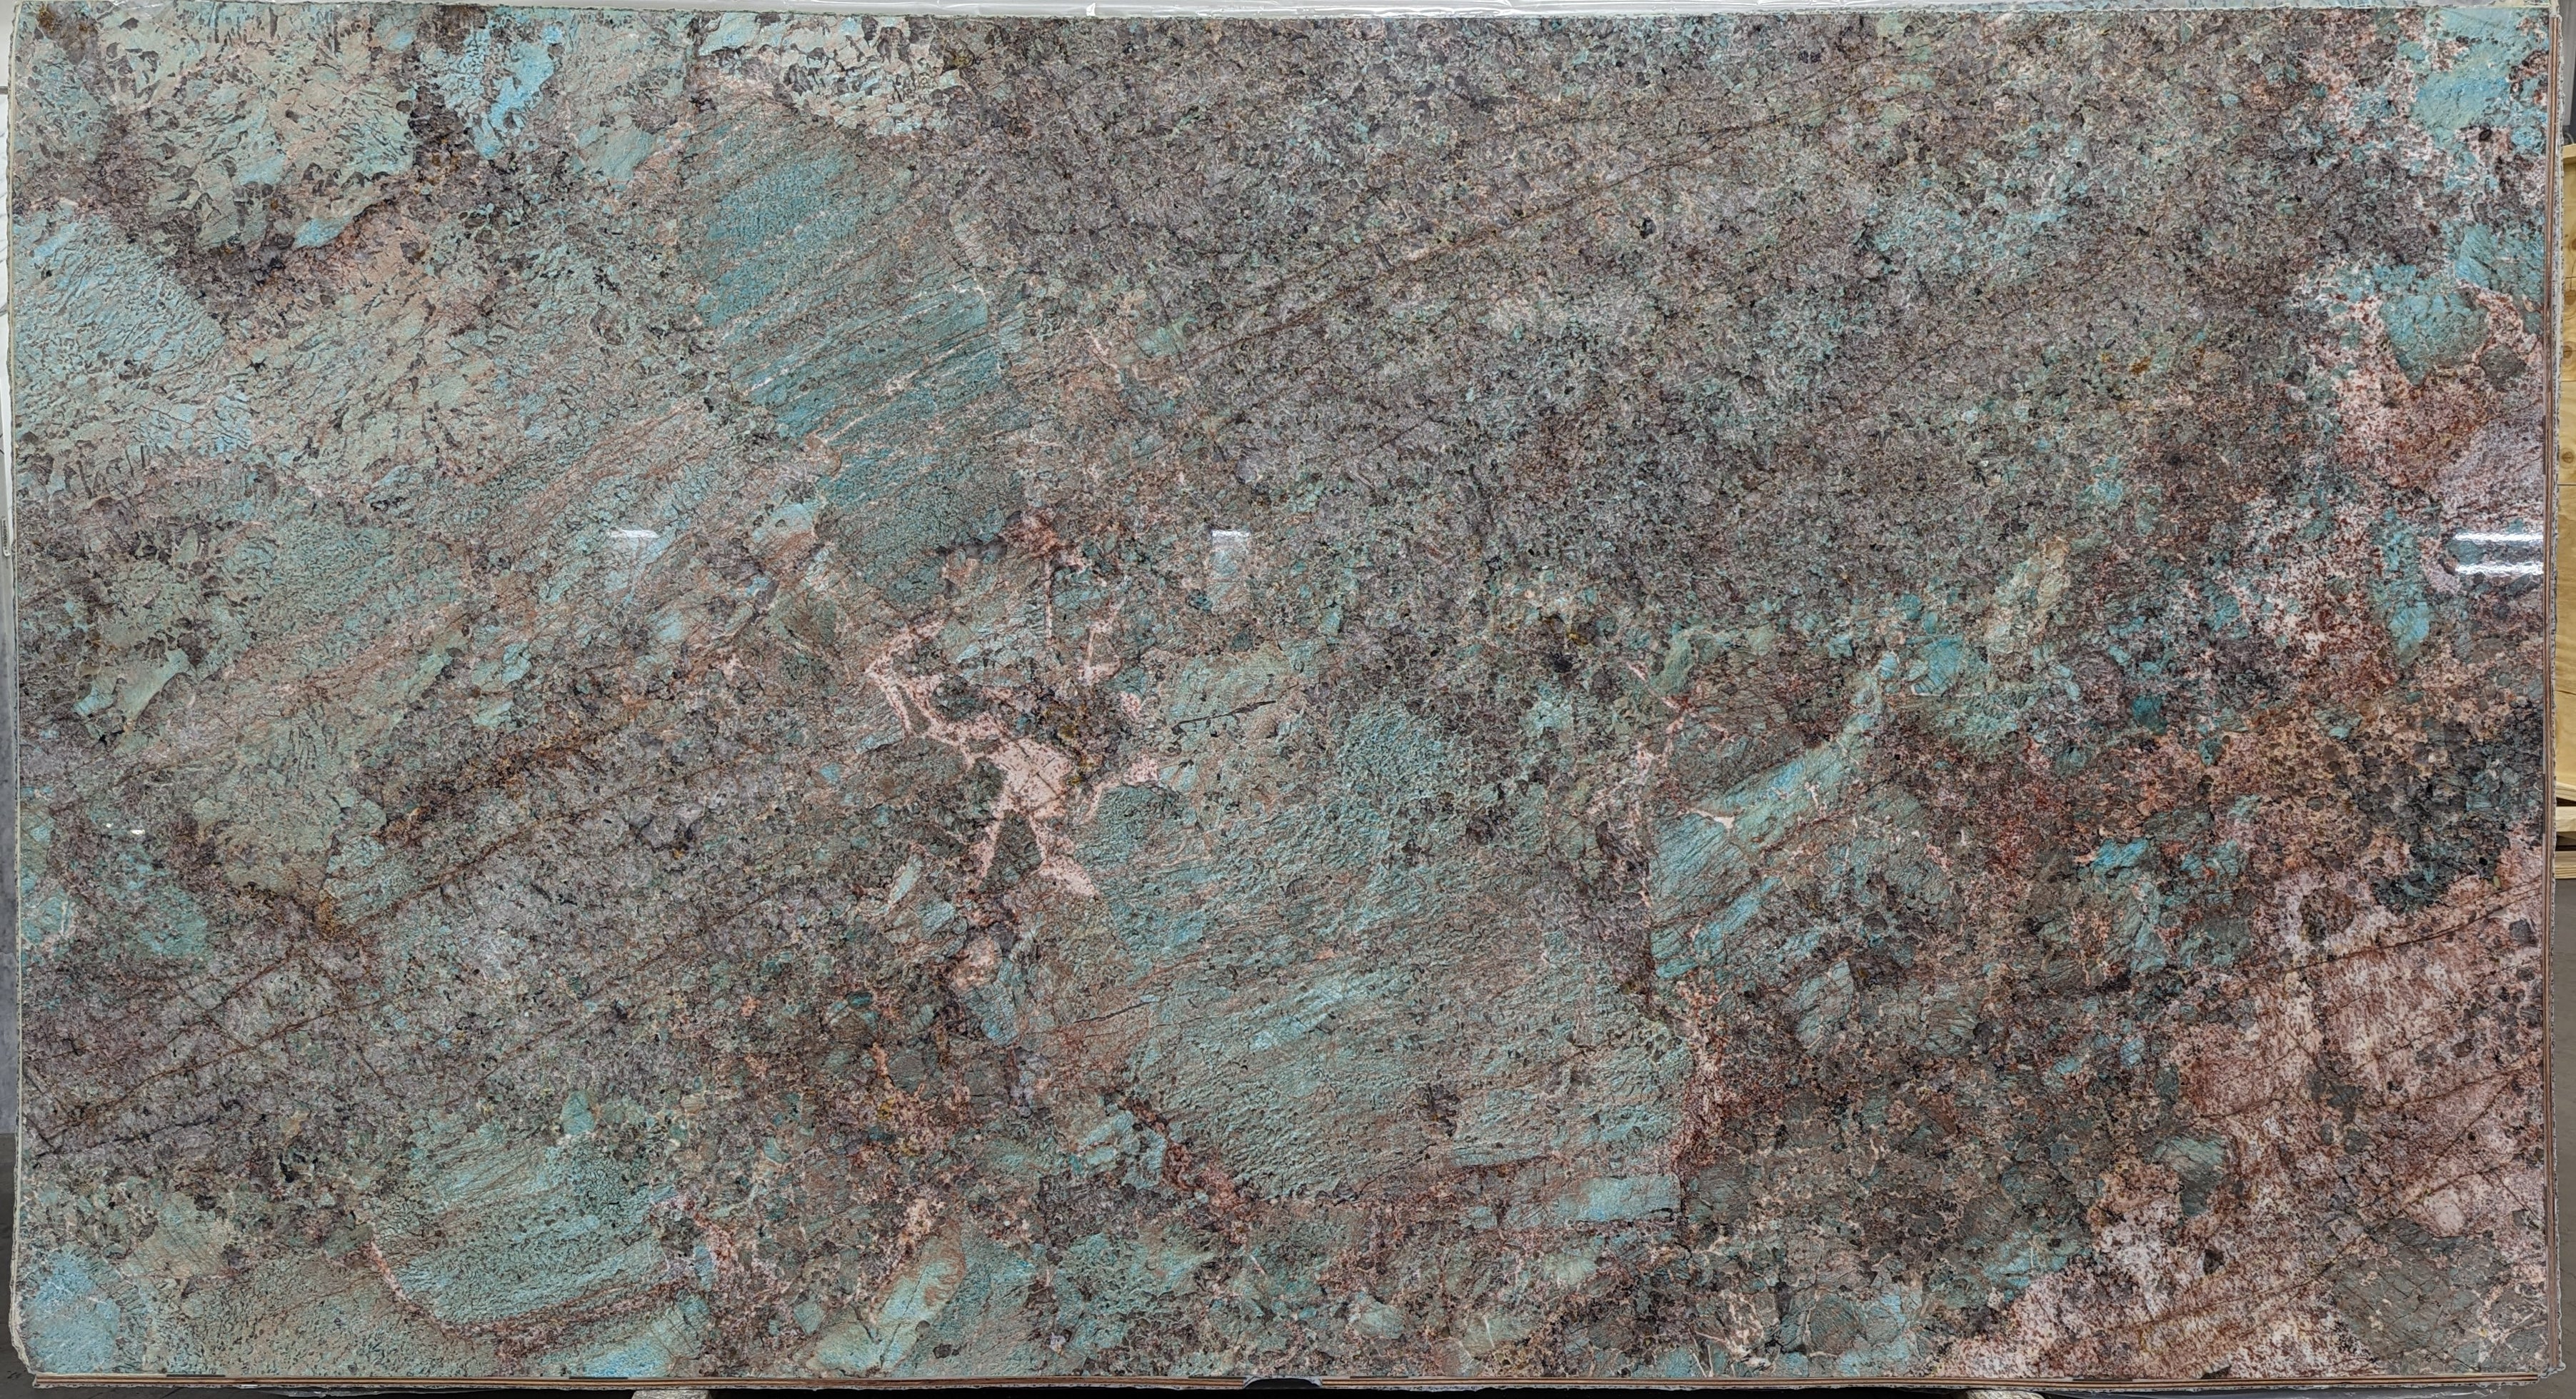  Amazonite Quartzite Slab 3/4  Polished Stone - 20921#28 -  64X119 